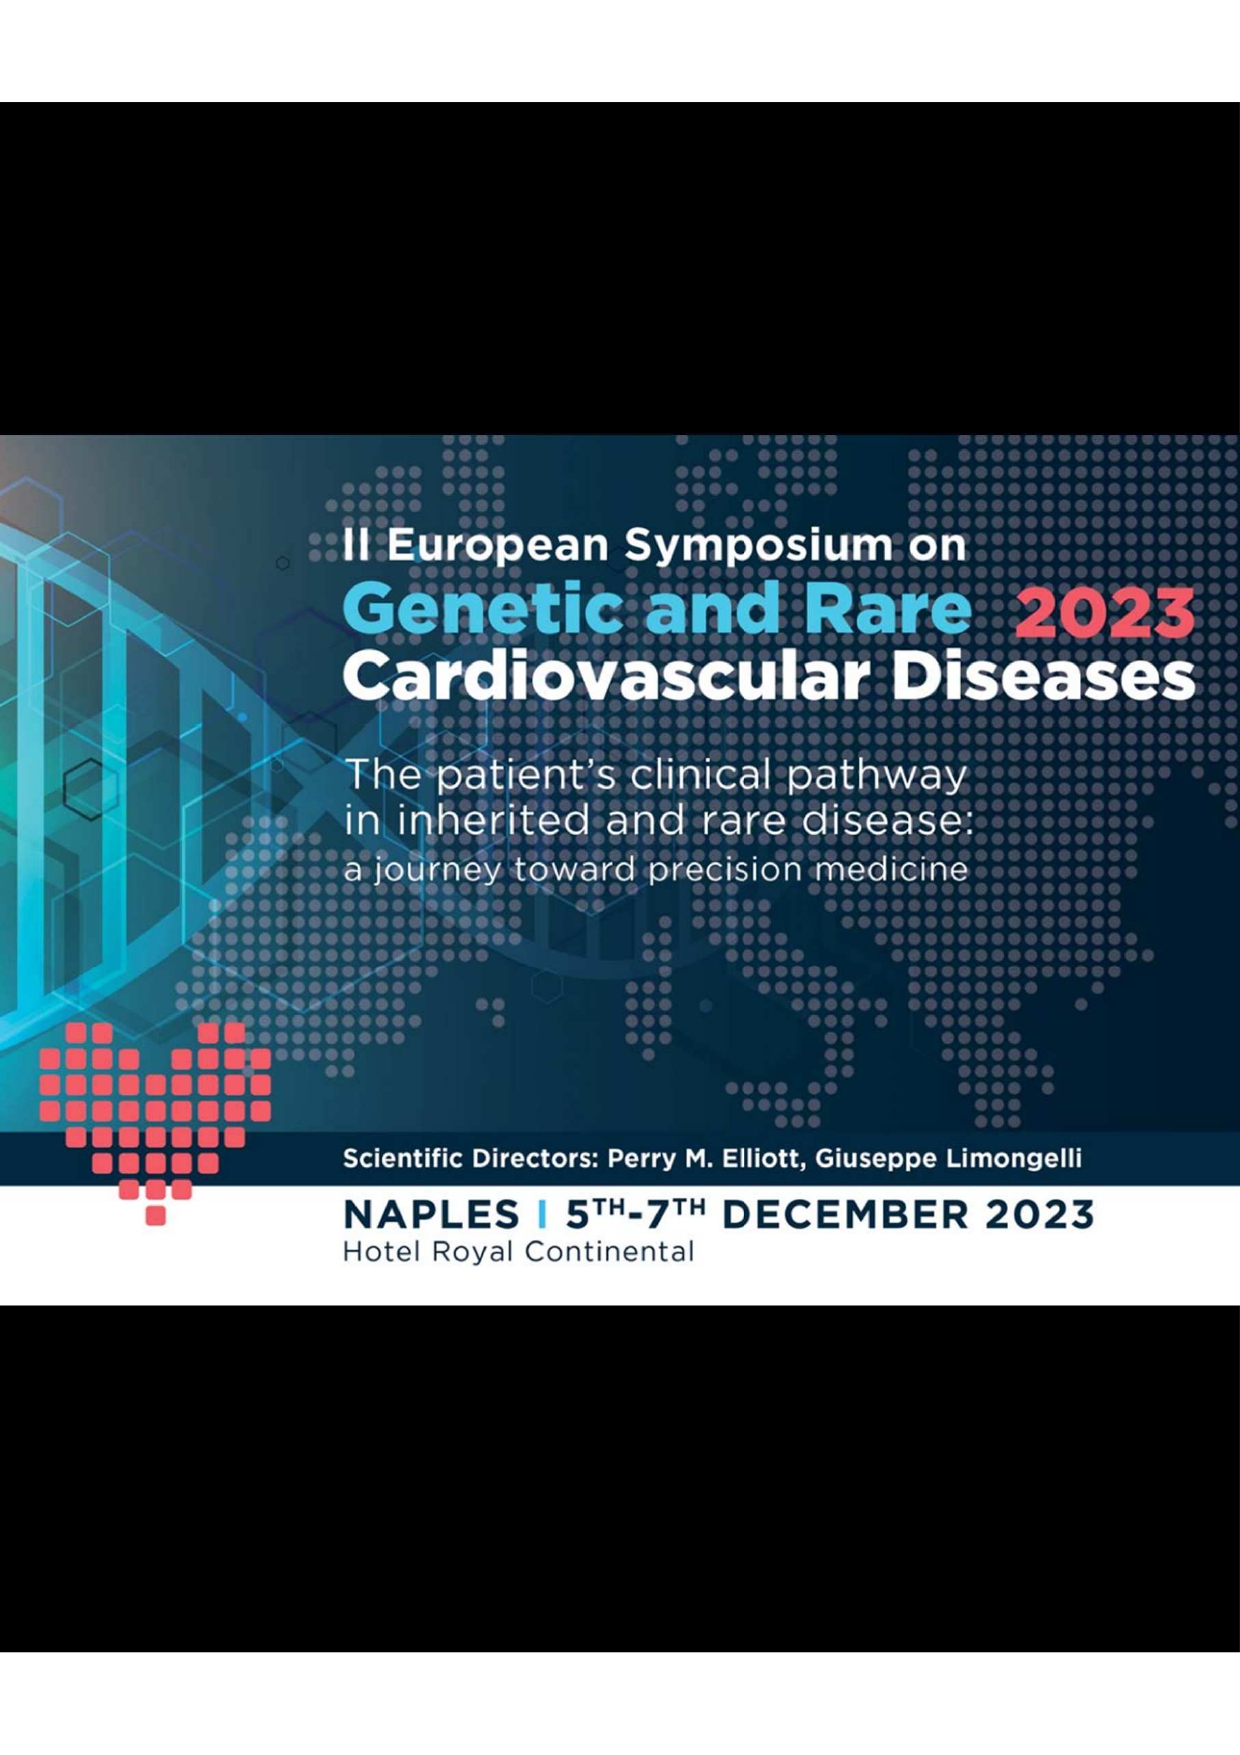 Simposio Europeo sobre Enfermedades Cardiovasculares Genéticas y Raras